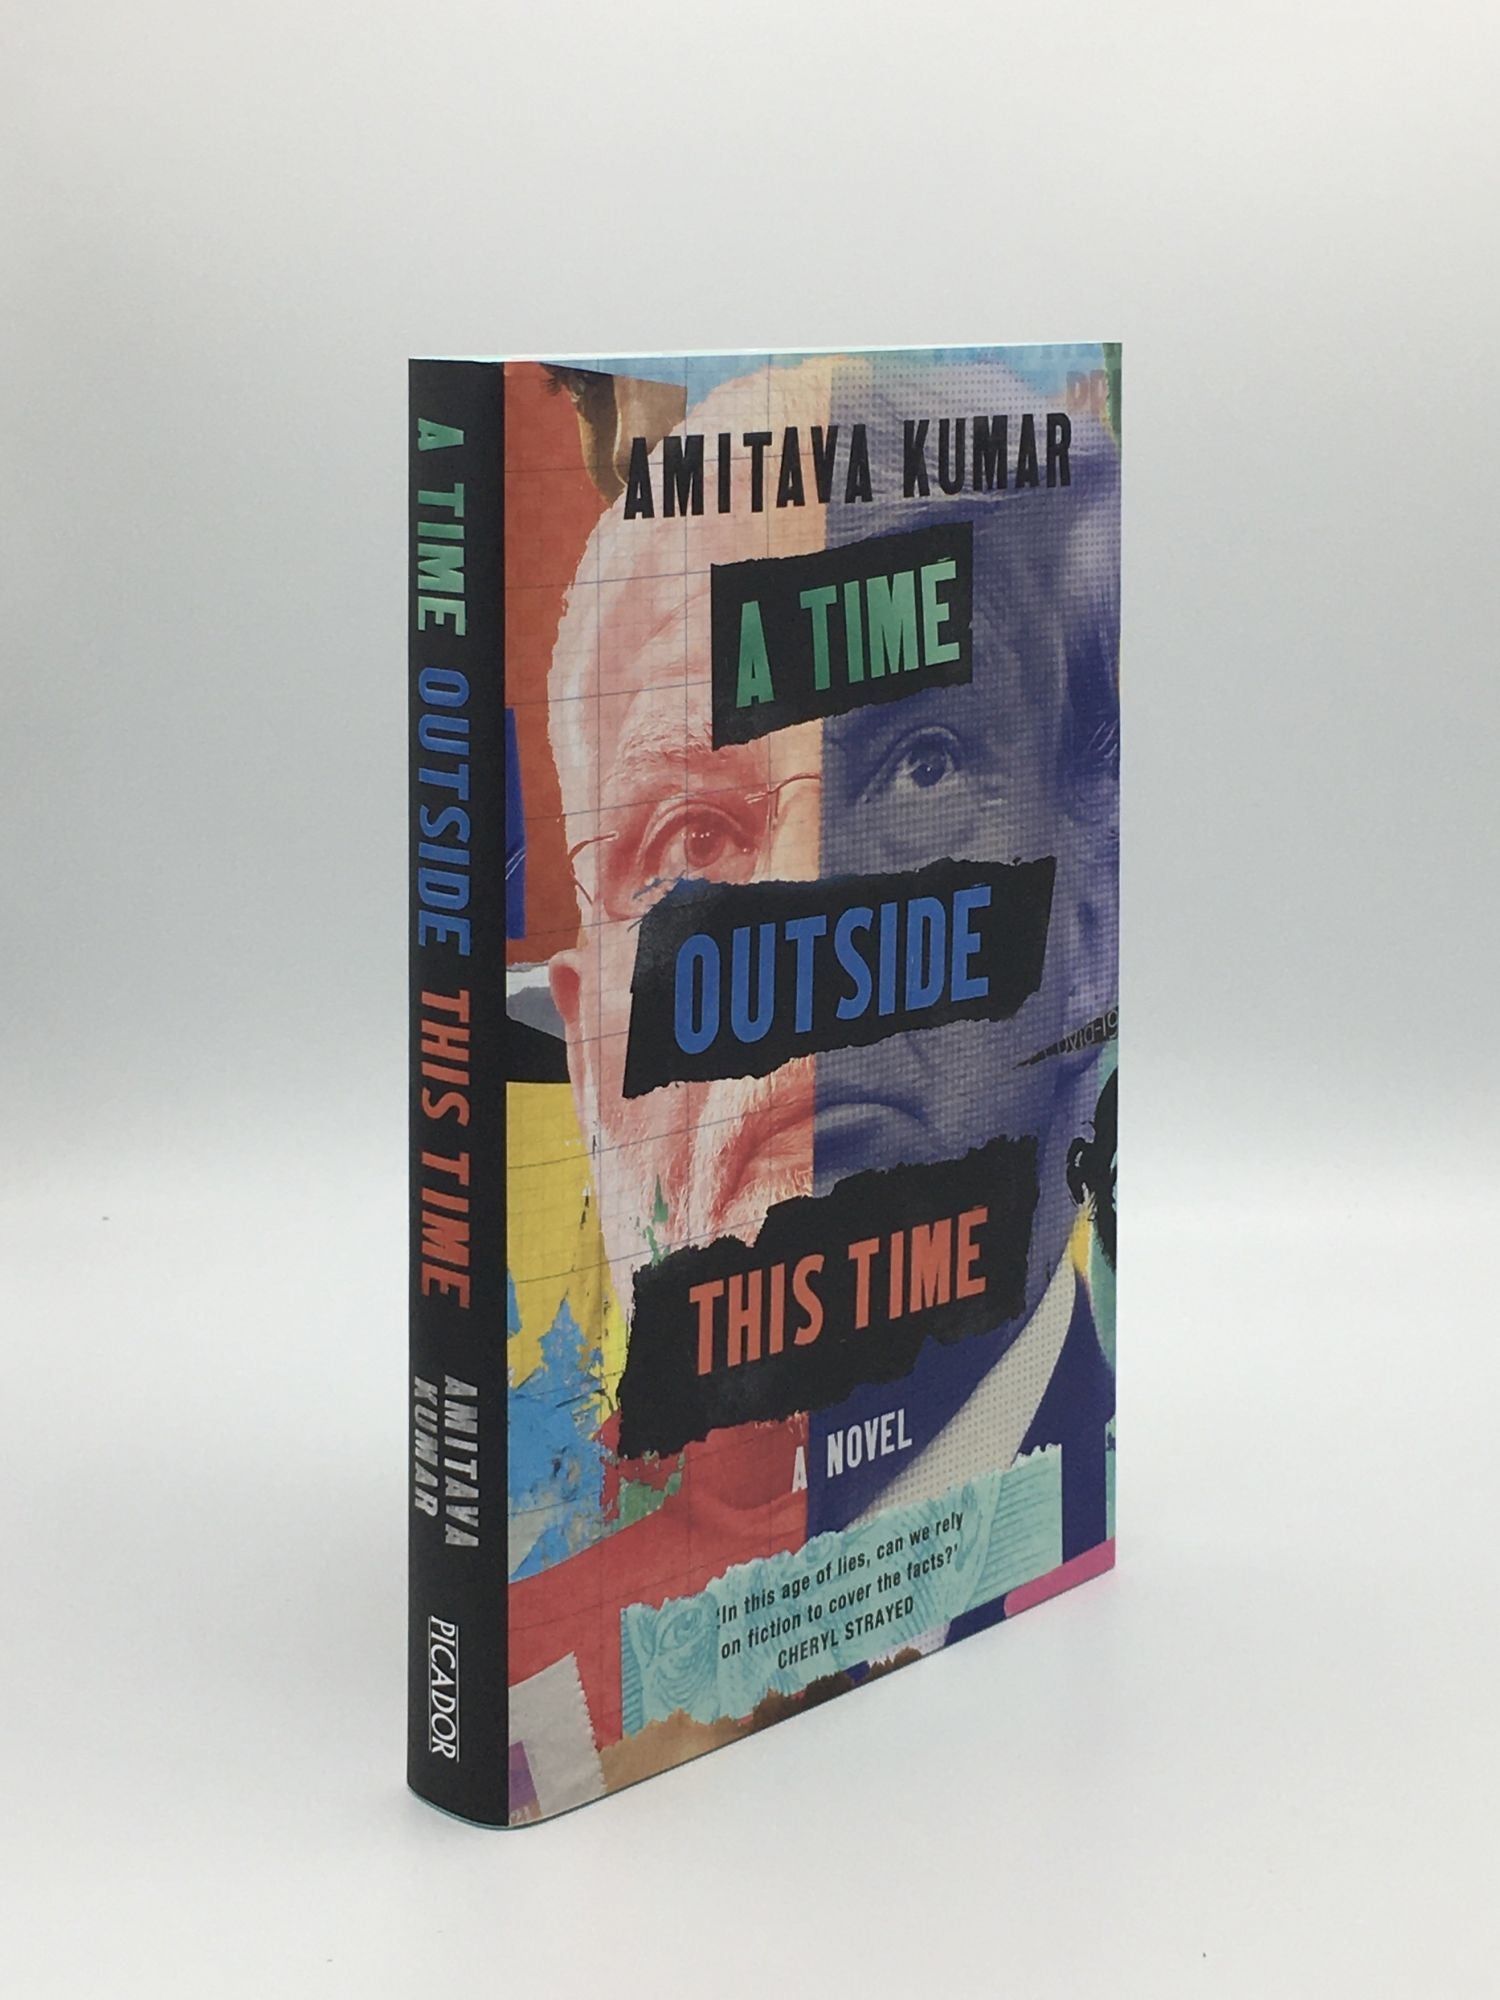 KUMAR Amitava - A Time Outside This Time a Novel